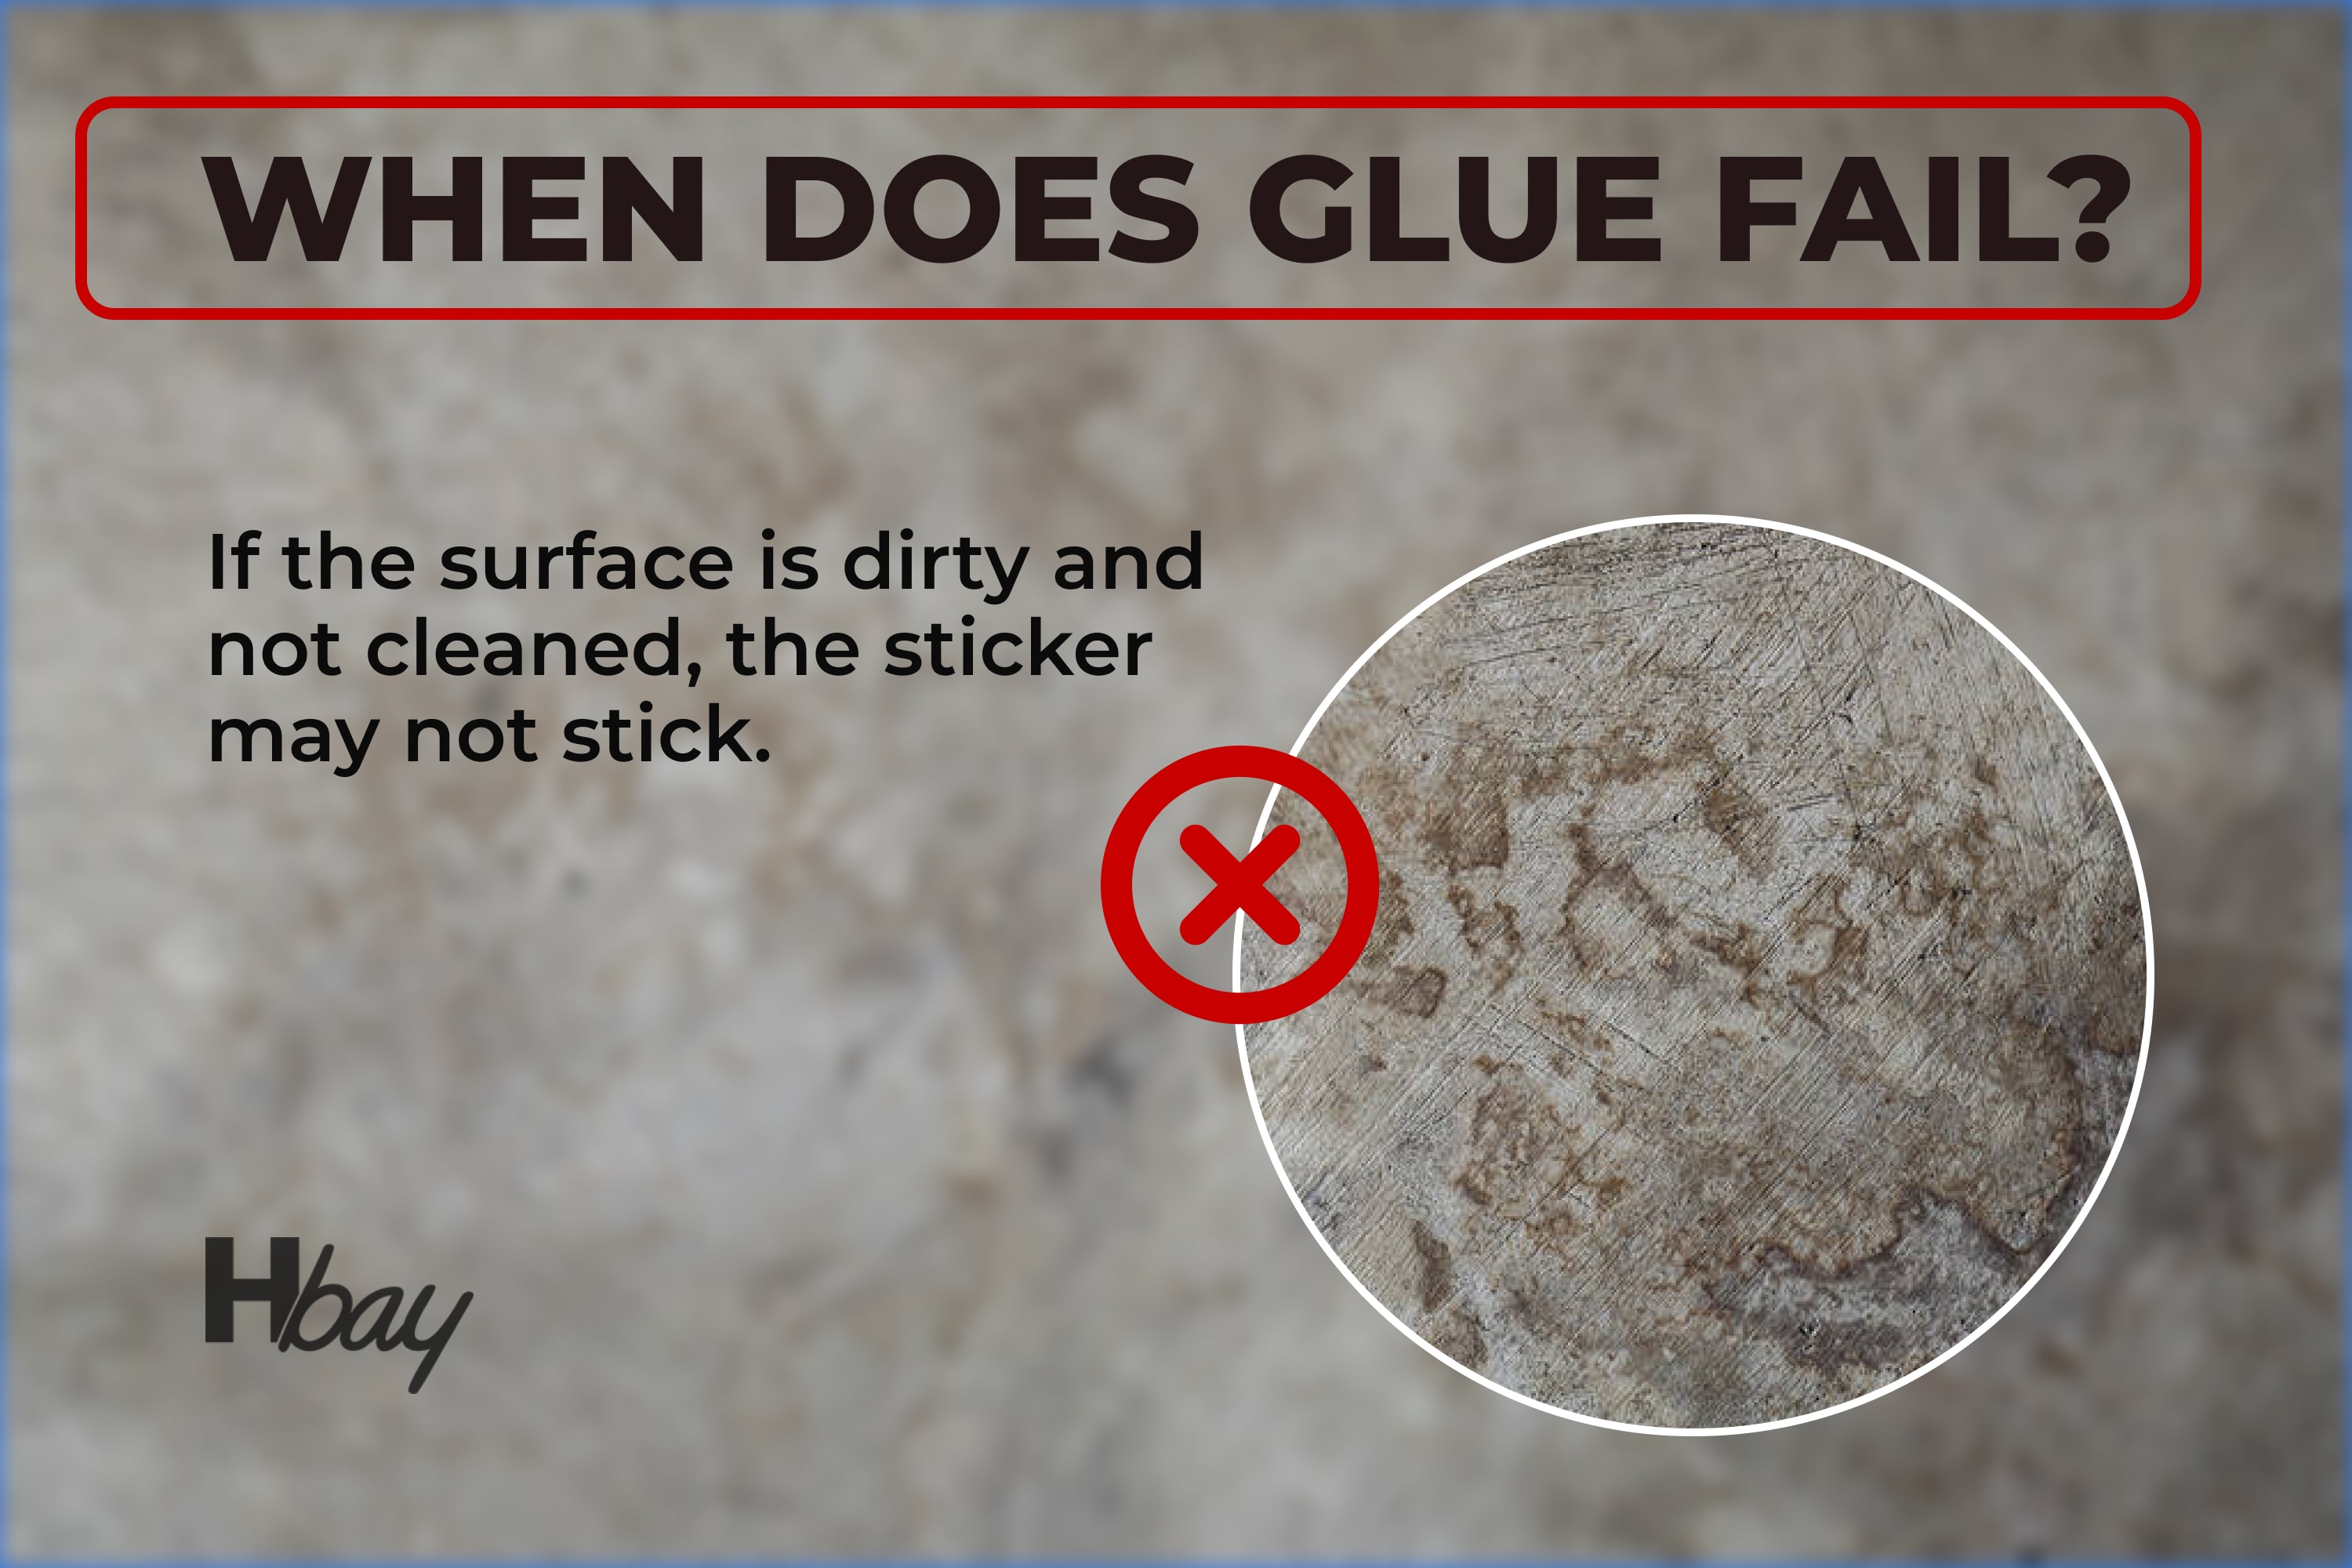 When does glue fail